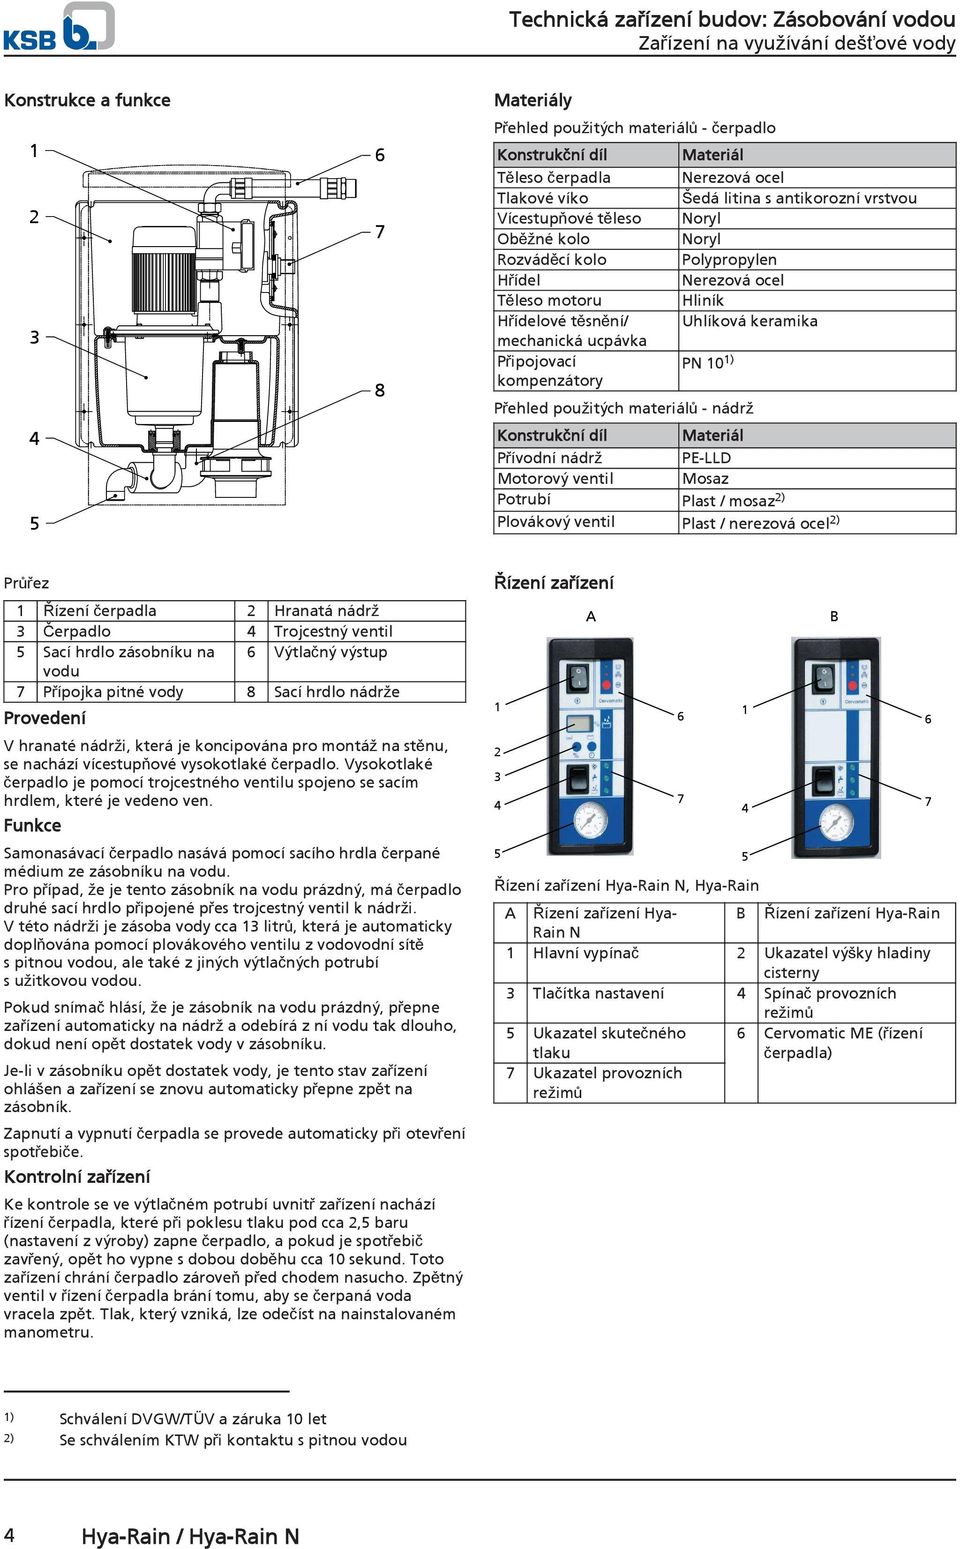 Přehled použitých materiálů - nádrž Konstrukční díl Materiál Přívodní nádrž PE-LLD Motorový ventil Mosaz Potrubí Plast / mosaz 2) Plovákový ventil Plast / nerezová ocel 2) Průřez 1 Řízení čerpadla 2